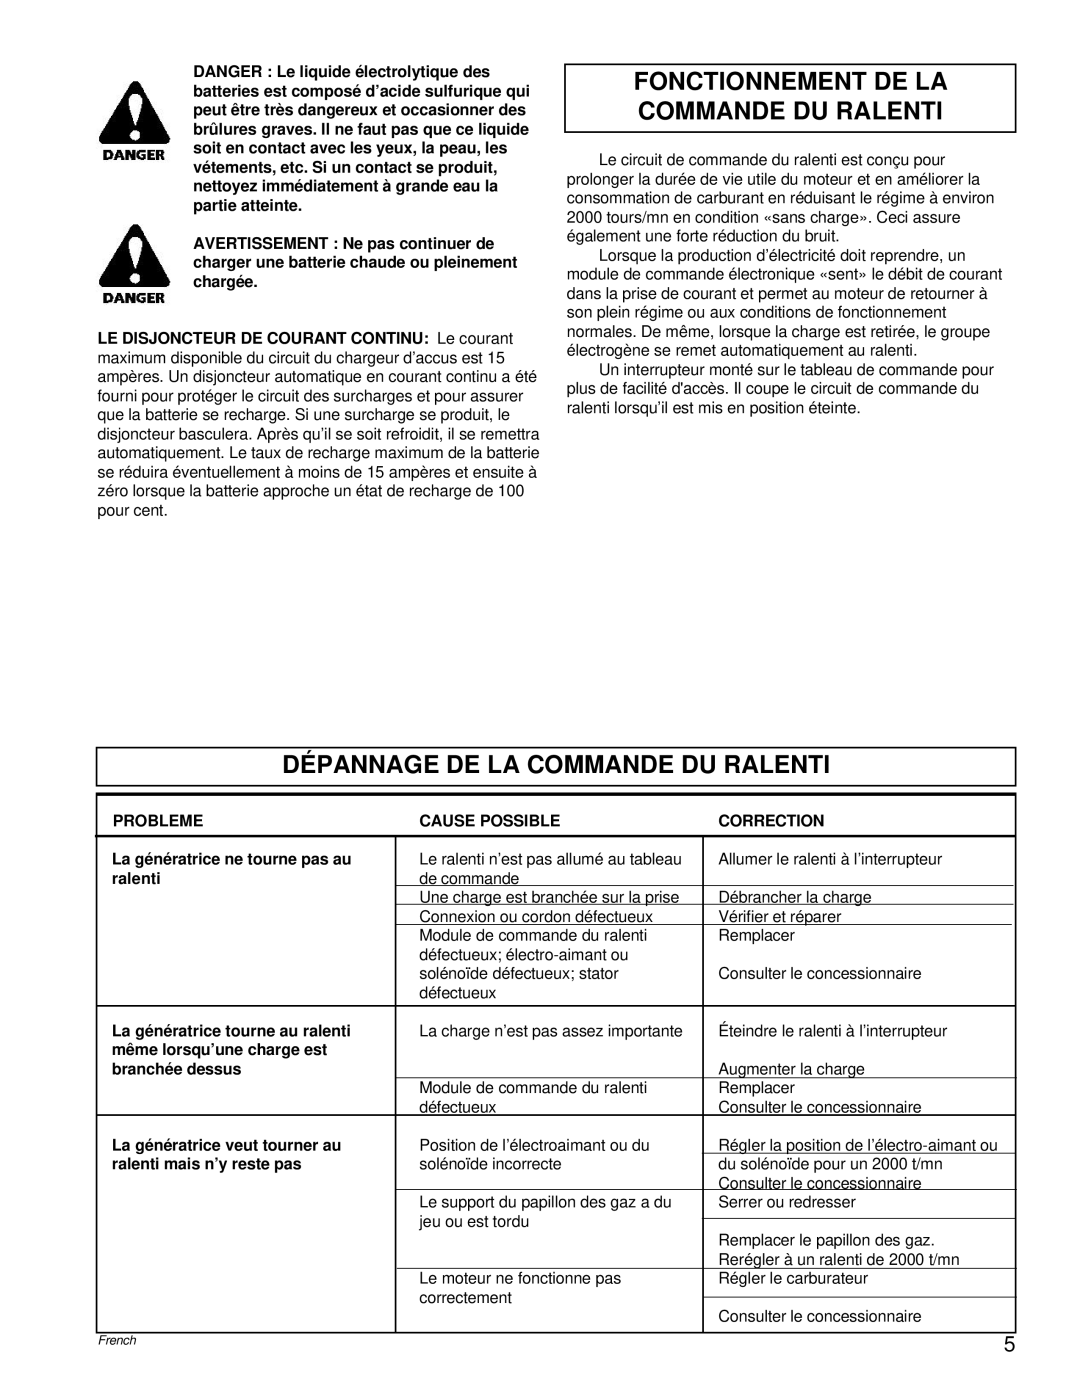 Powermate PM0495501.01 manual Fonctionnement De La Commande Du Ralenti, Dépannage De La Commande Du Ralenti 